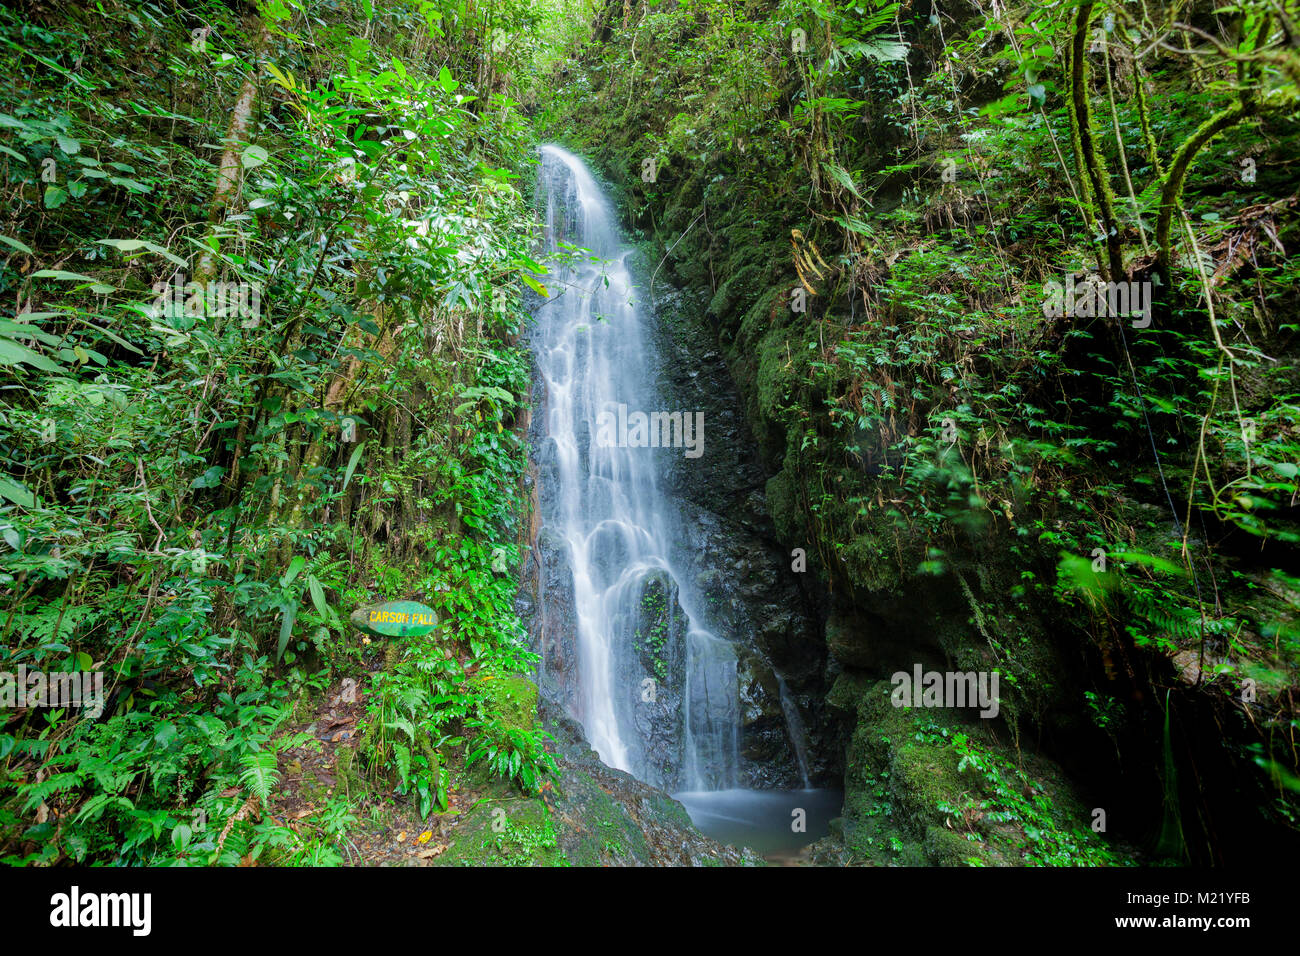 River and waterfall in Kinabalu, Borneo, Malaysia Stock Photo